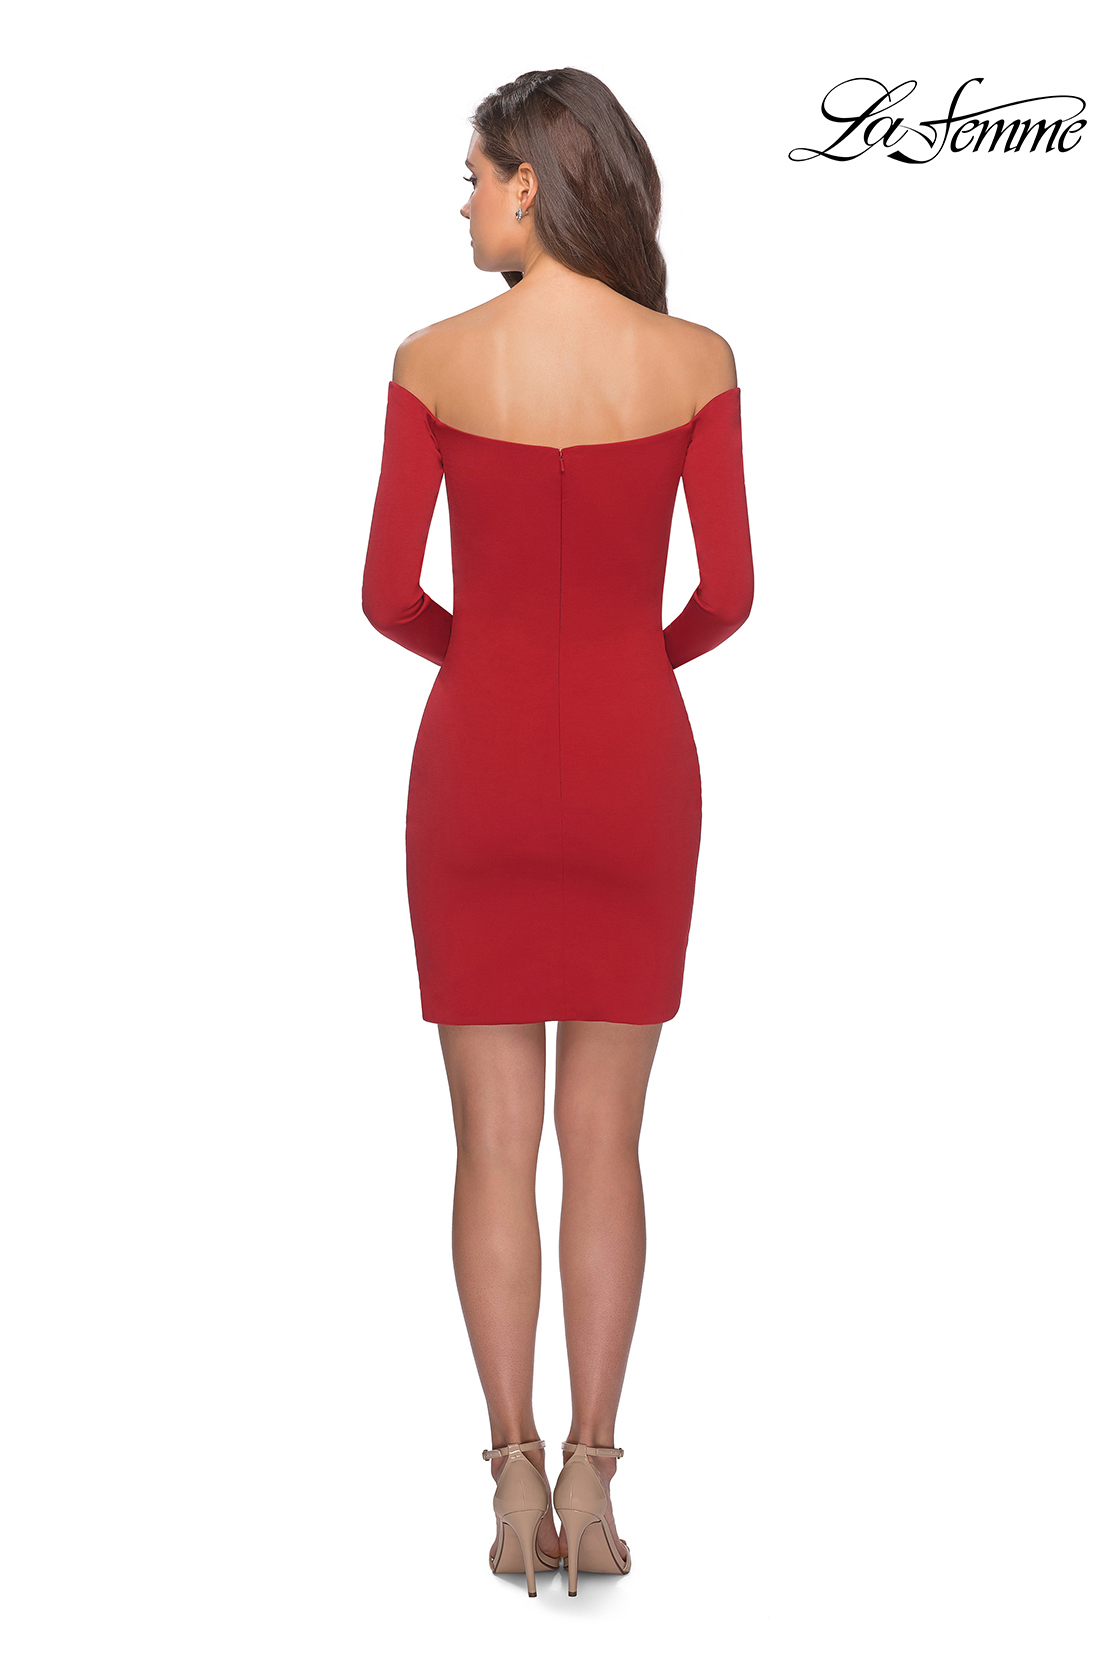 La Femme Short Dresses Style #28182 | La Femme